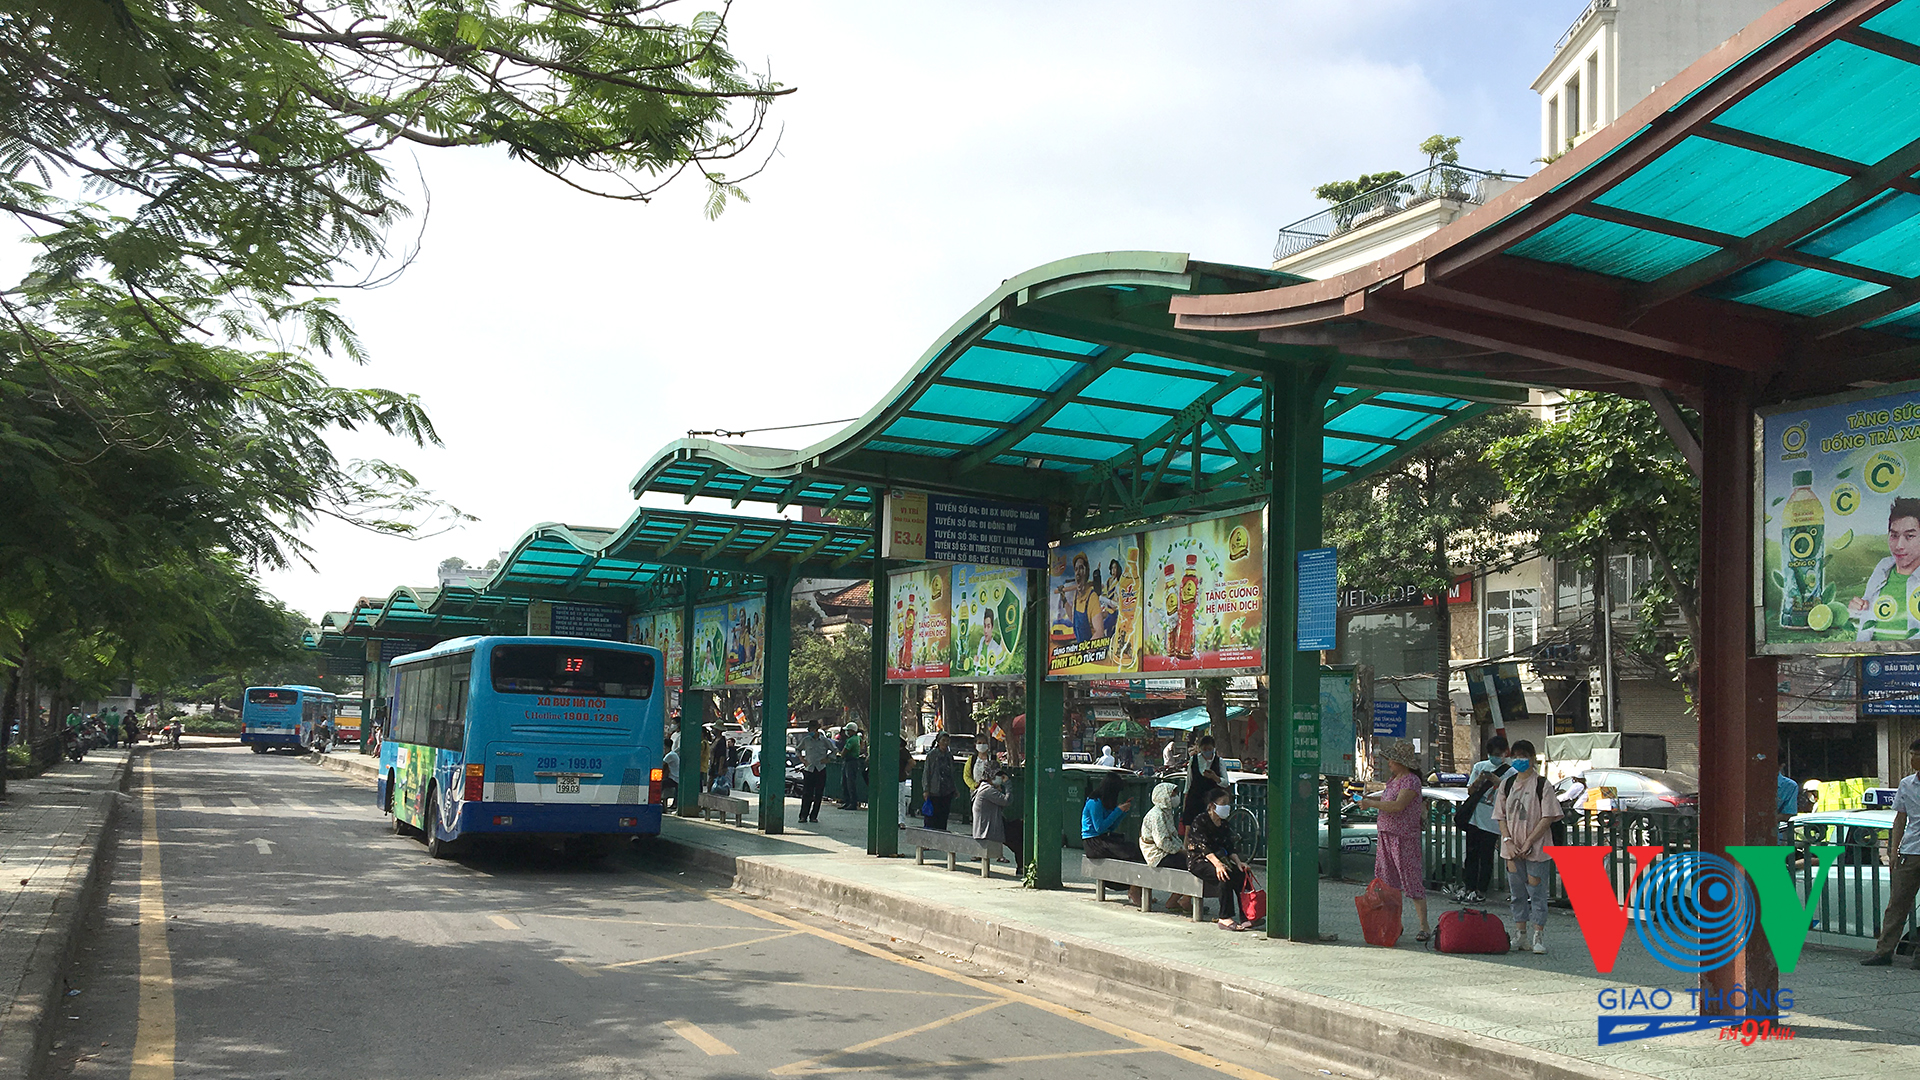 Bạn có muốn khám phá thành phố Hà Nội bằng xe buýt? Hãy xem hình ảnh xe buýt Hà Nội này. Xe buýt sẽ đưa bạn đến những địa điểm nổi tiếng và đặc trưng của Hà Nội, giúp bạn cảm nhận sự đa dạng và phong phú của văn hóa và kiến trúc nơi đây.